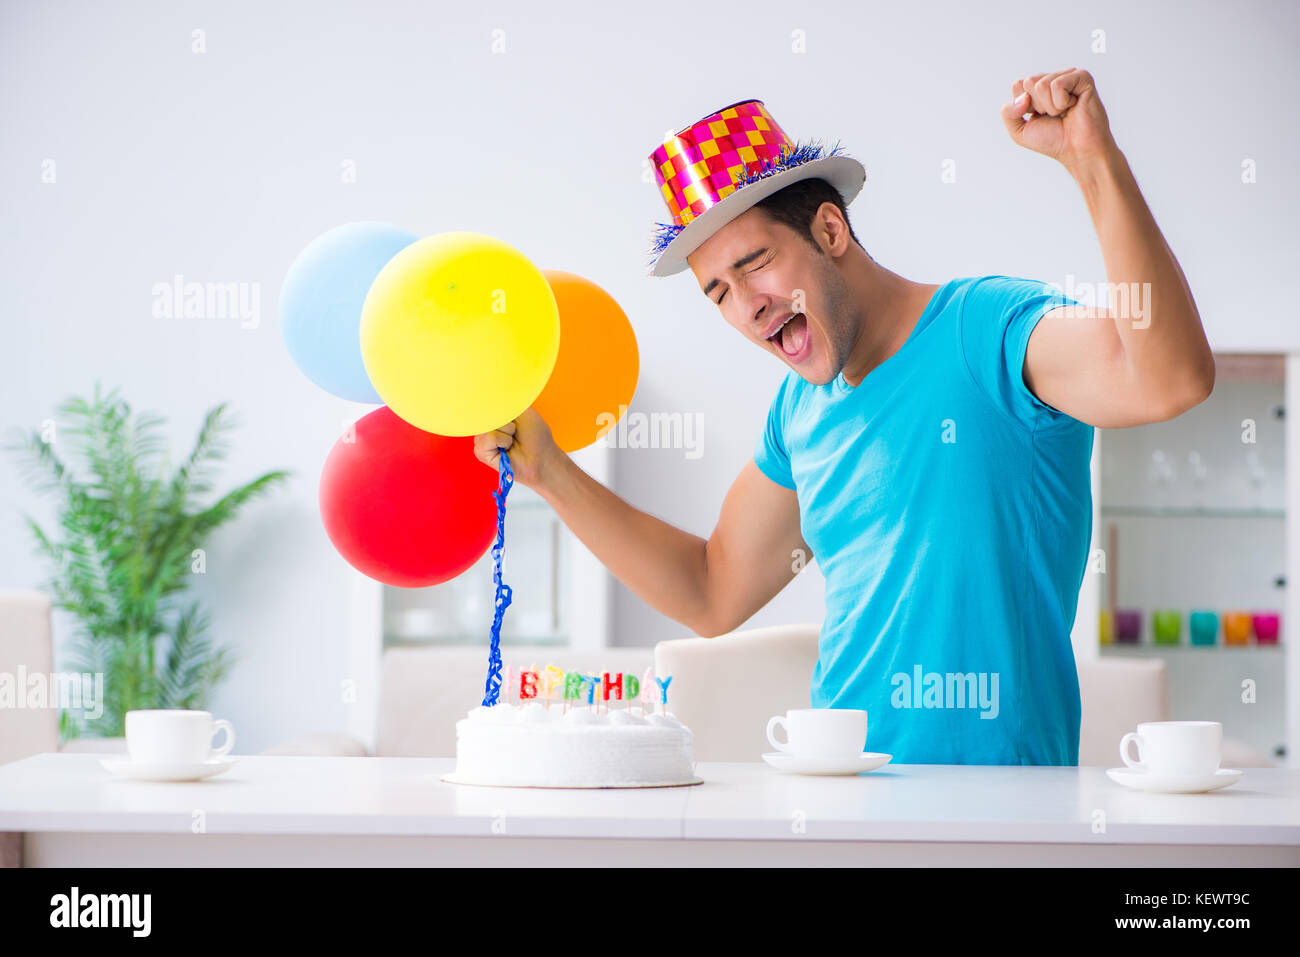 Junger Mann Geburtstag Alleine Feiern Zu Hause Stockfotografie Alamy